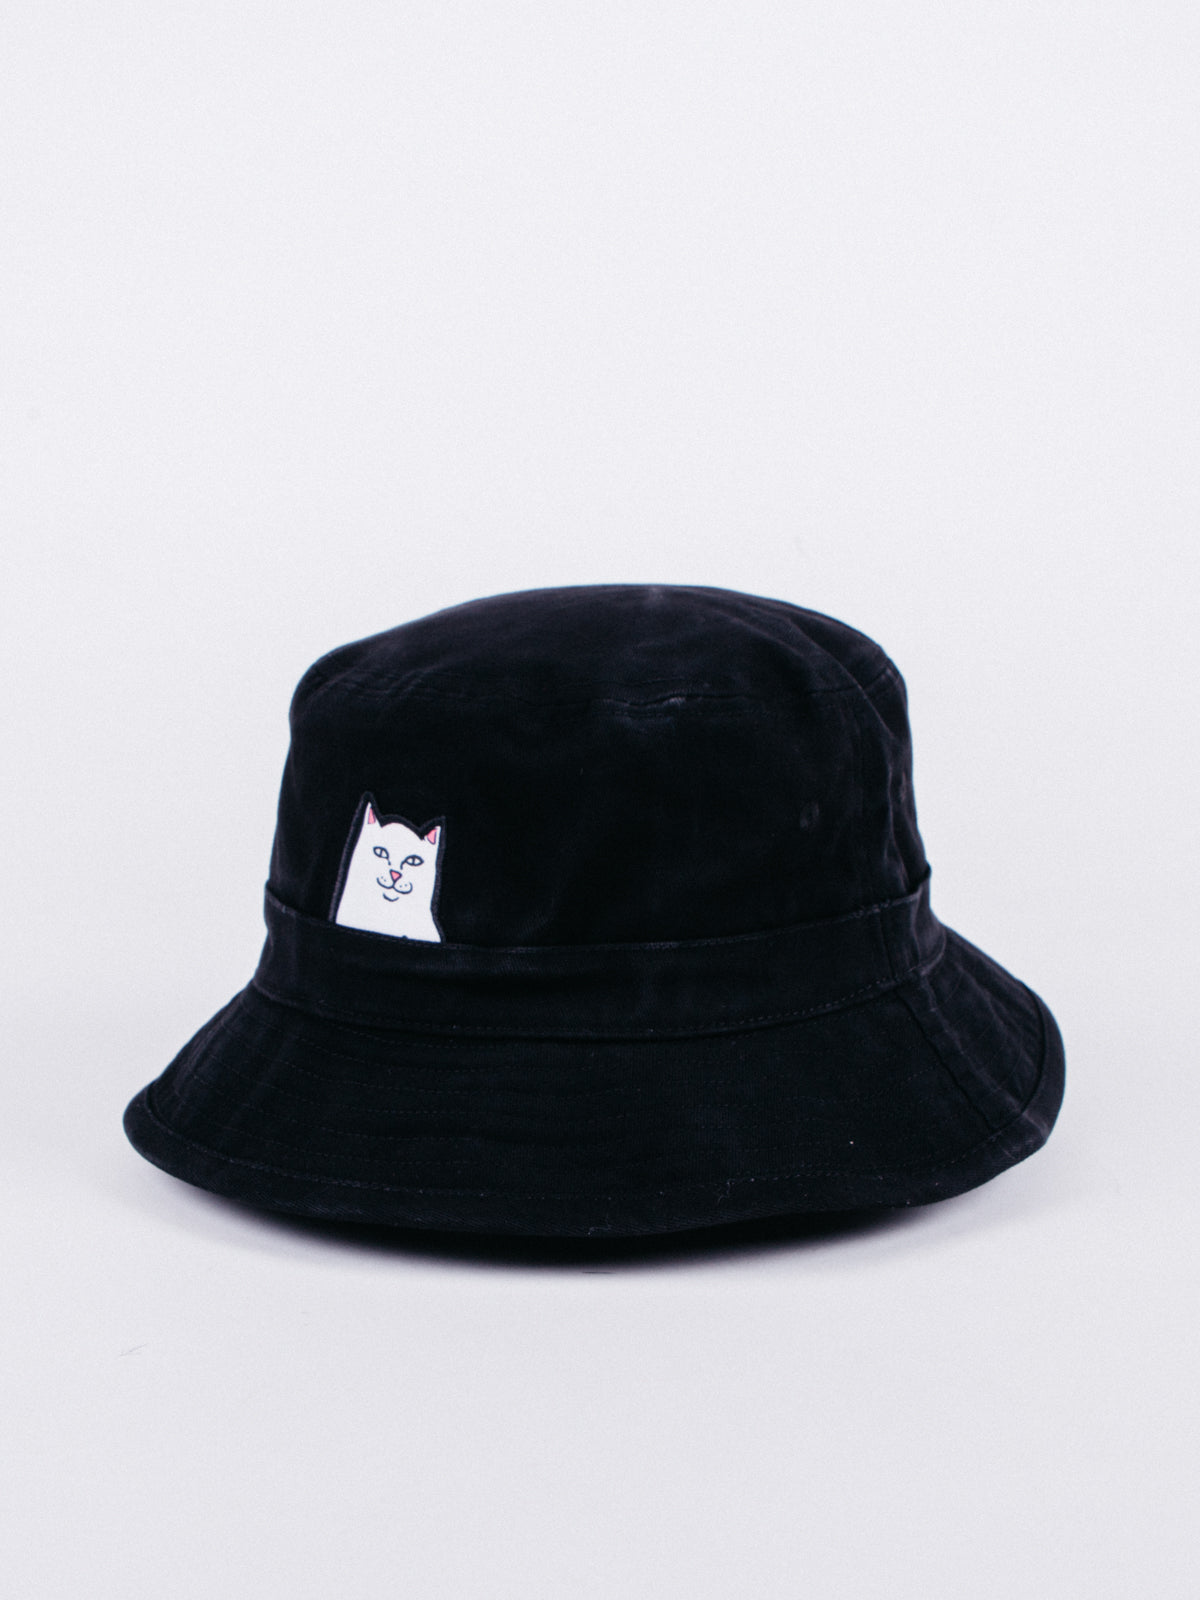 gorro tipo bucket hat negro de gato gracioso